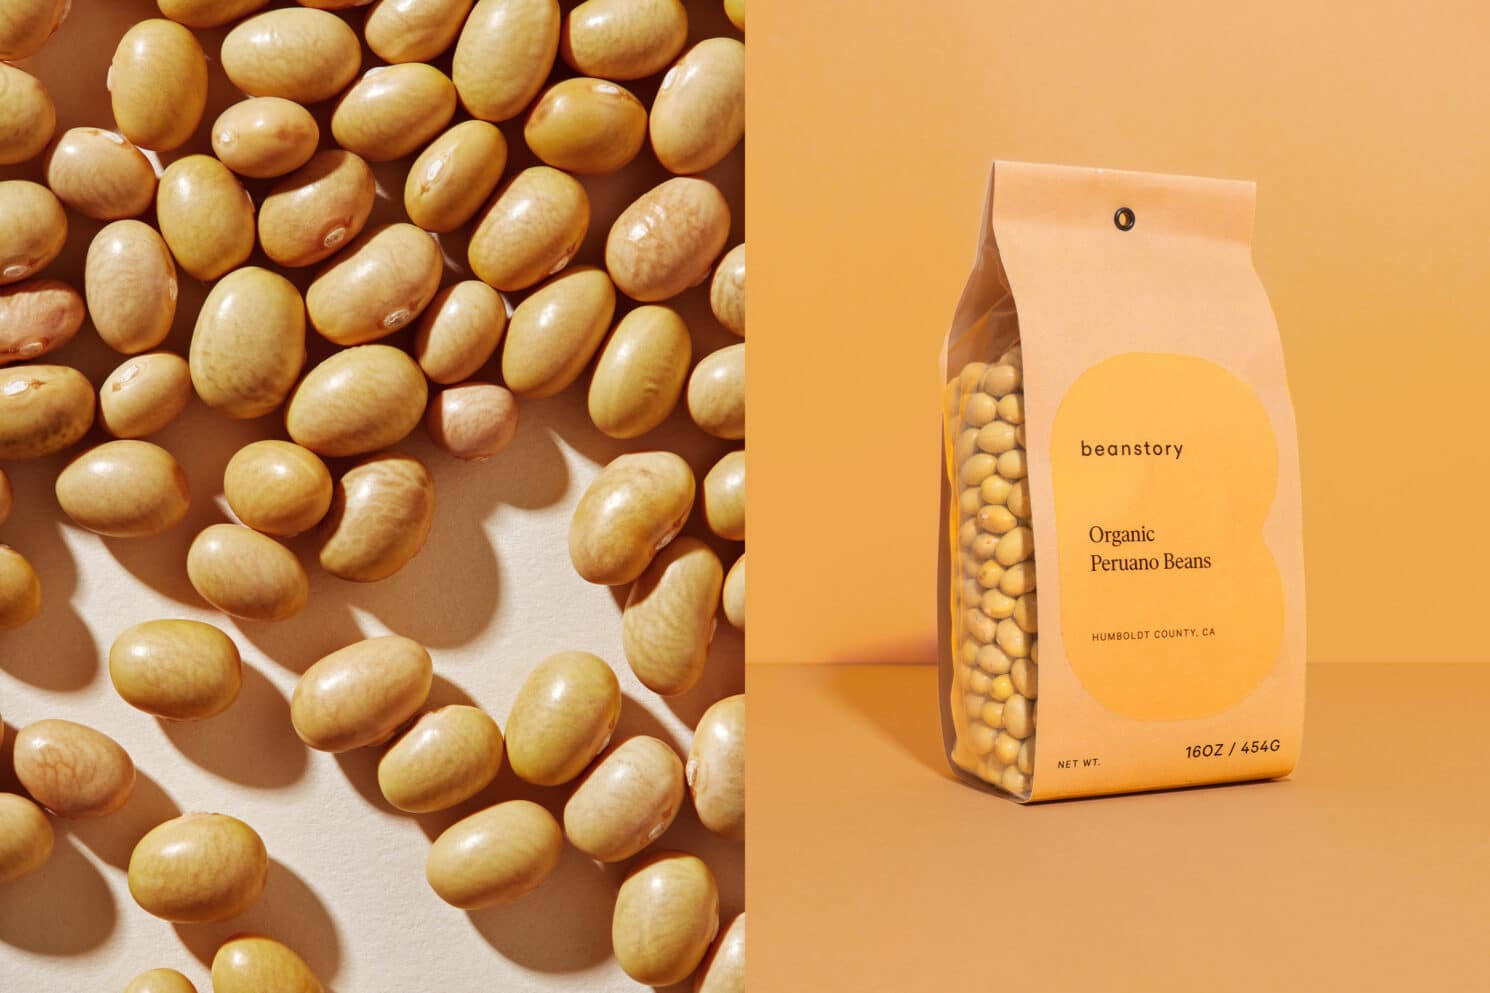 Visual Identity für den Bohnenvertrieb Beanstory: Packaging Design für Peruano Beans rechts mit der Hintergrundfarbe des Logos in gelb. Daneben ein Foto der getrockneten Bohnen ohne Verpackung